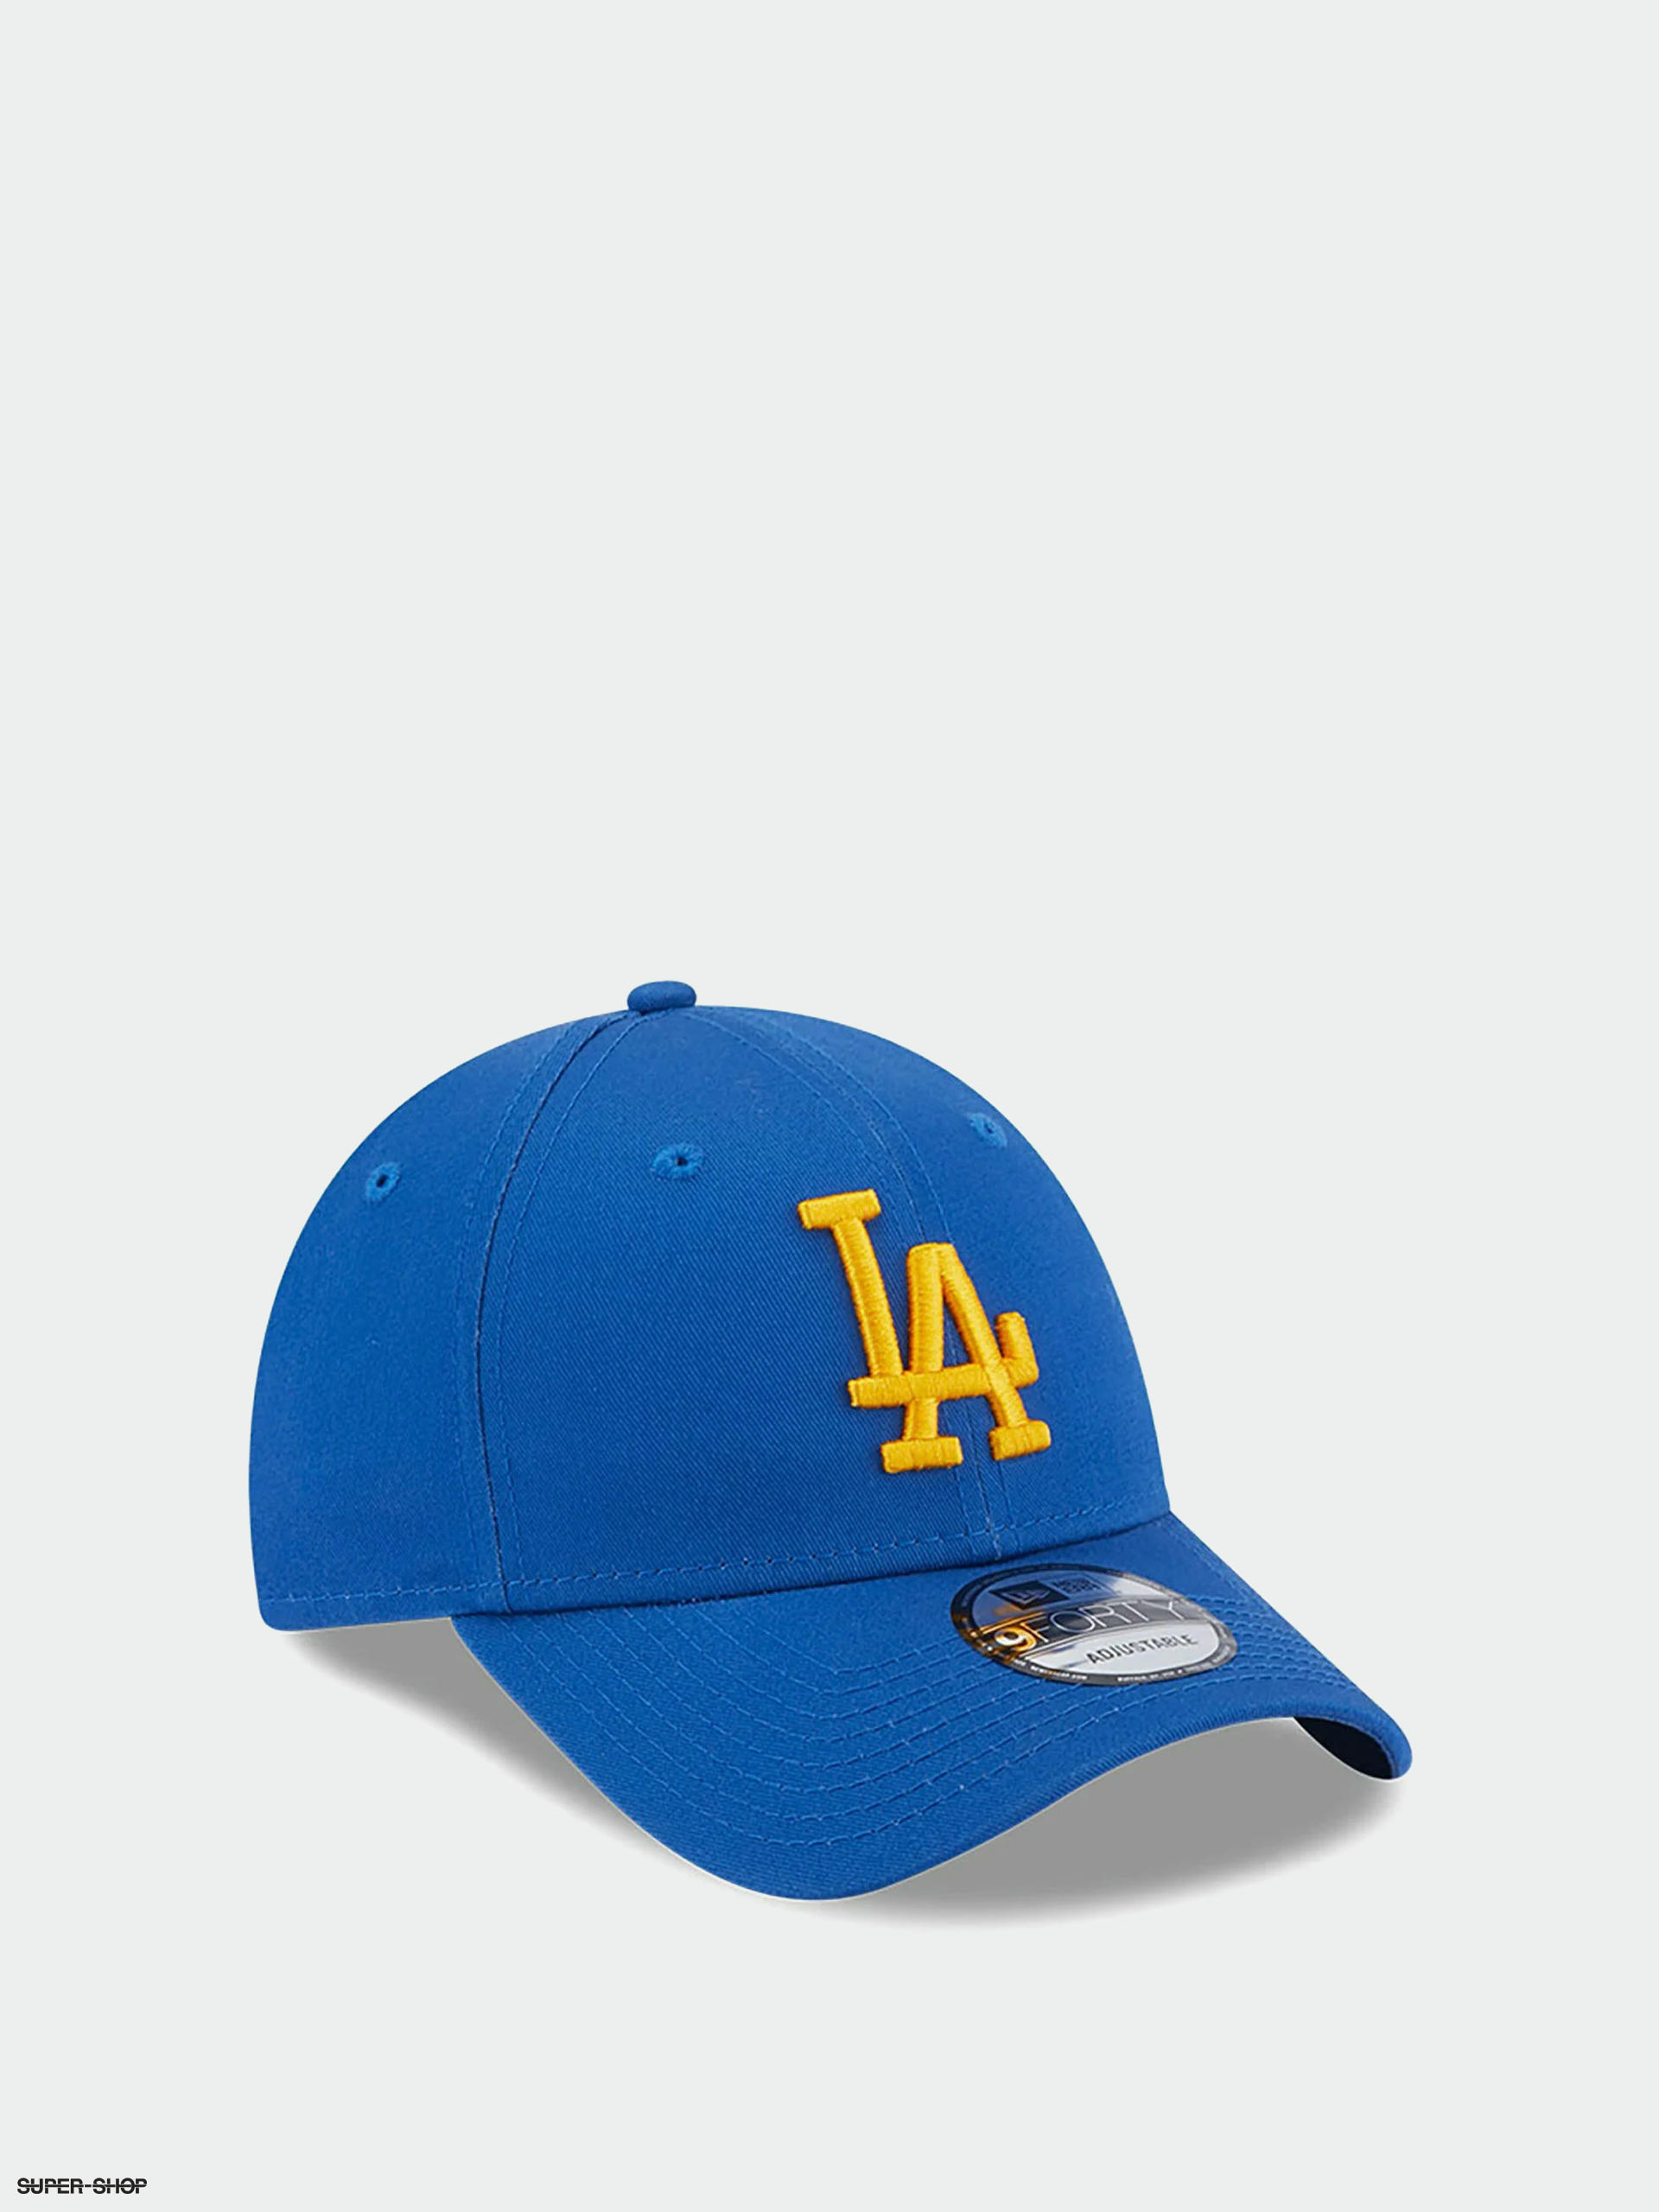 NEW ERA LOS ANGELES DODGERS BASEBALL CAP